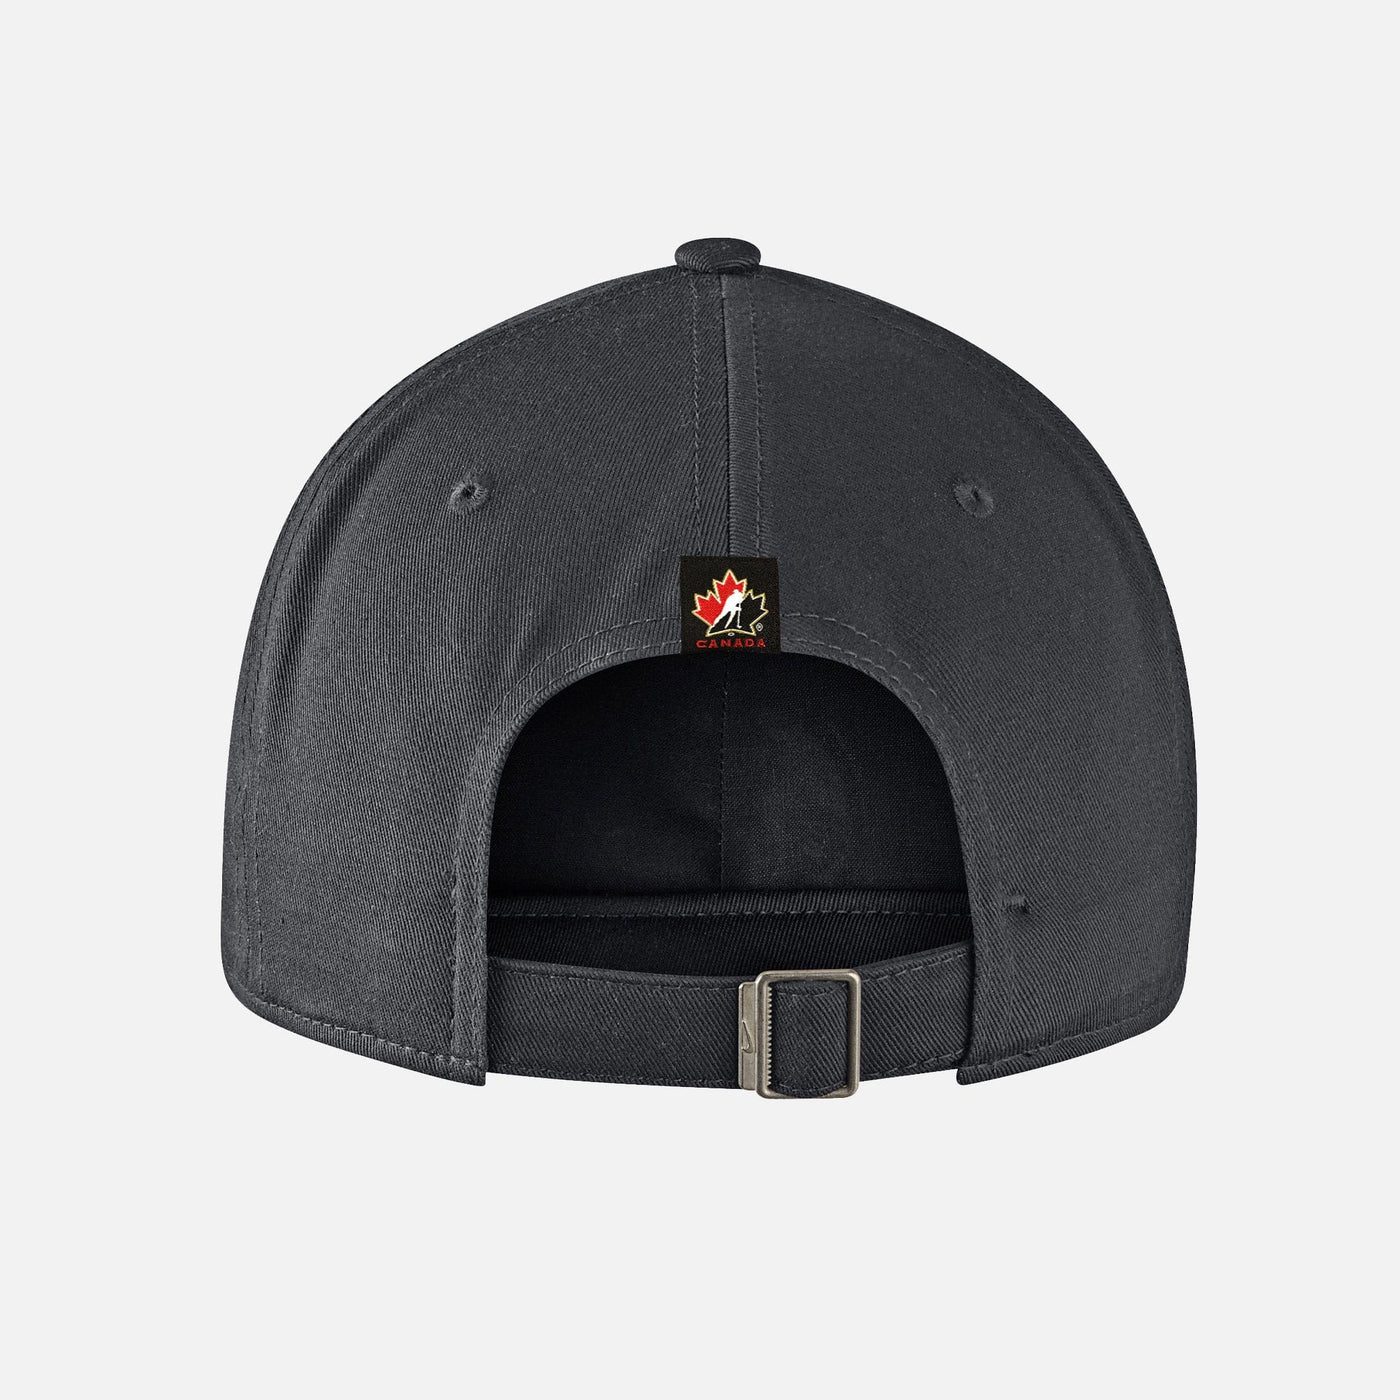 Team Canada Nike Adjustable Senior Hat